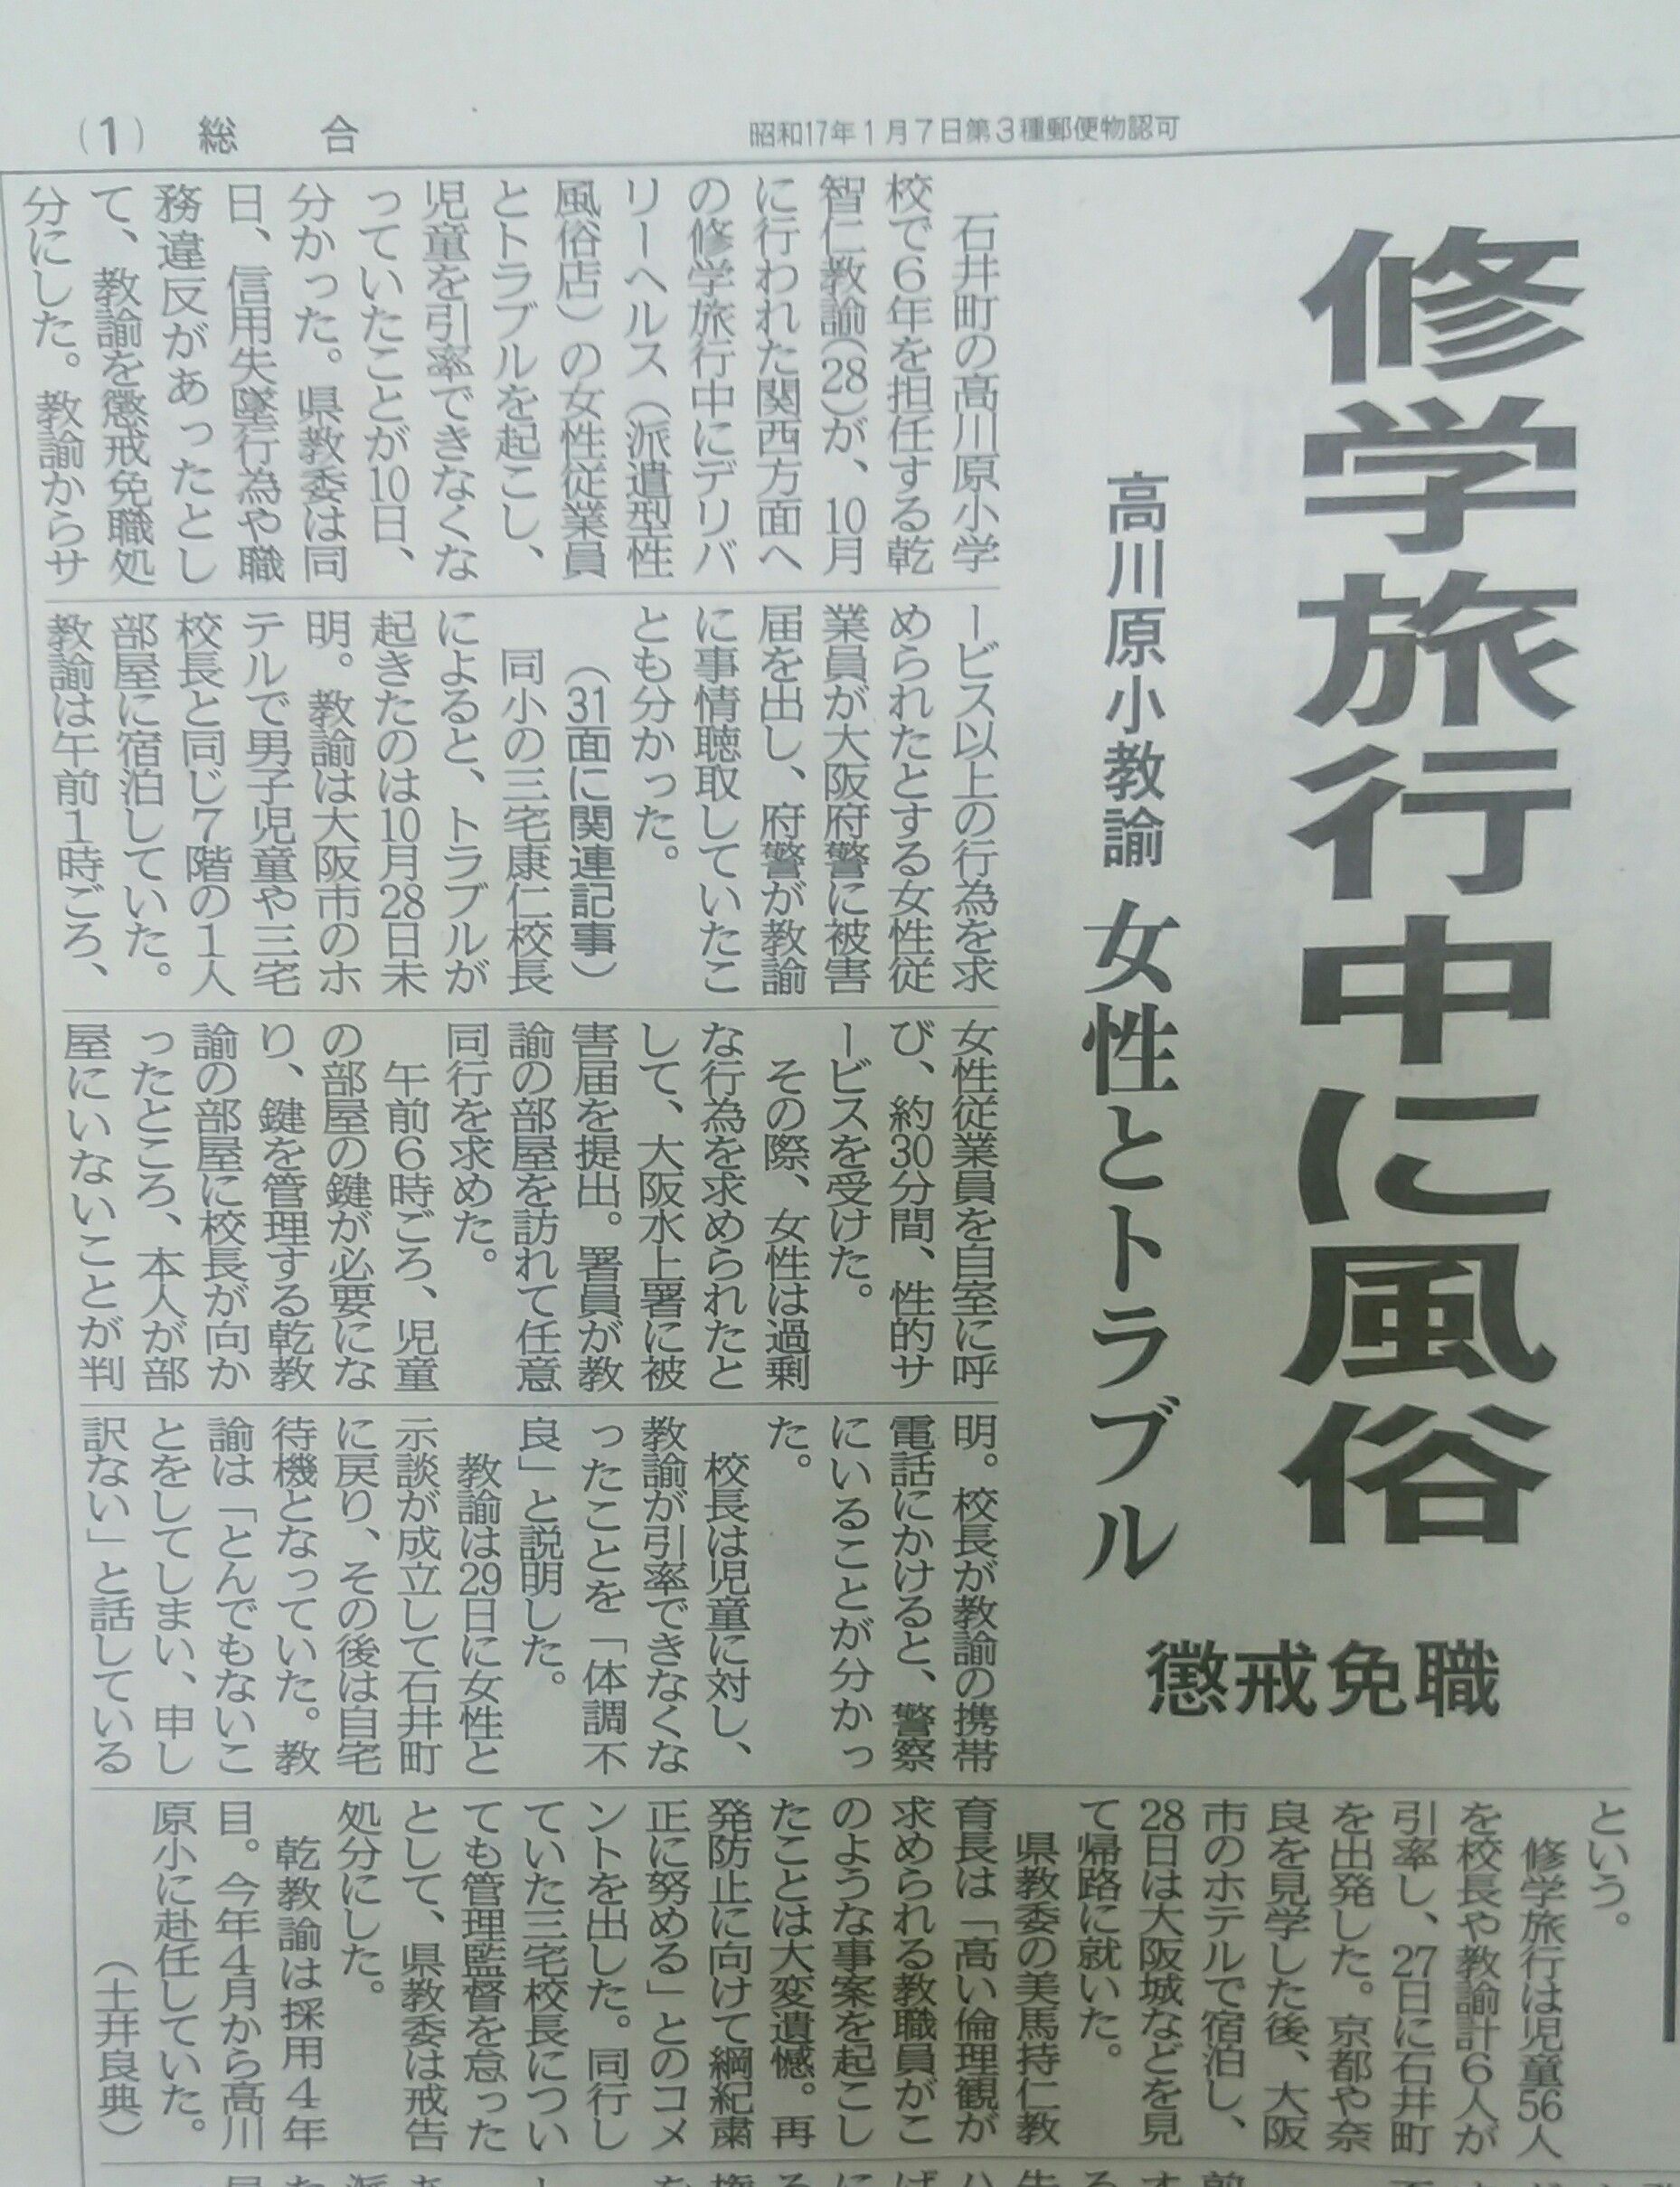 懲戒解雇となったとなった教師を実名報道した徳島新聞